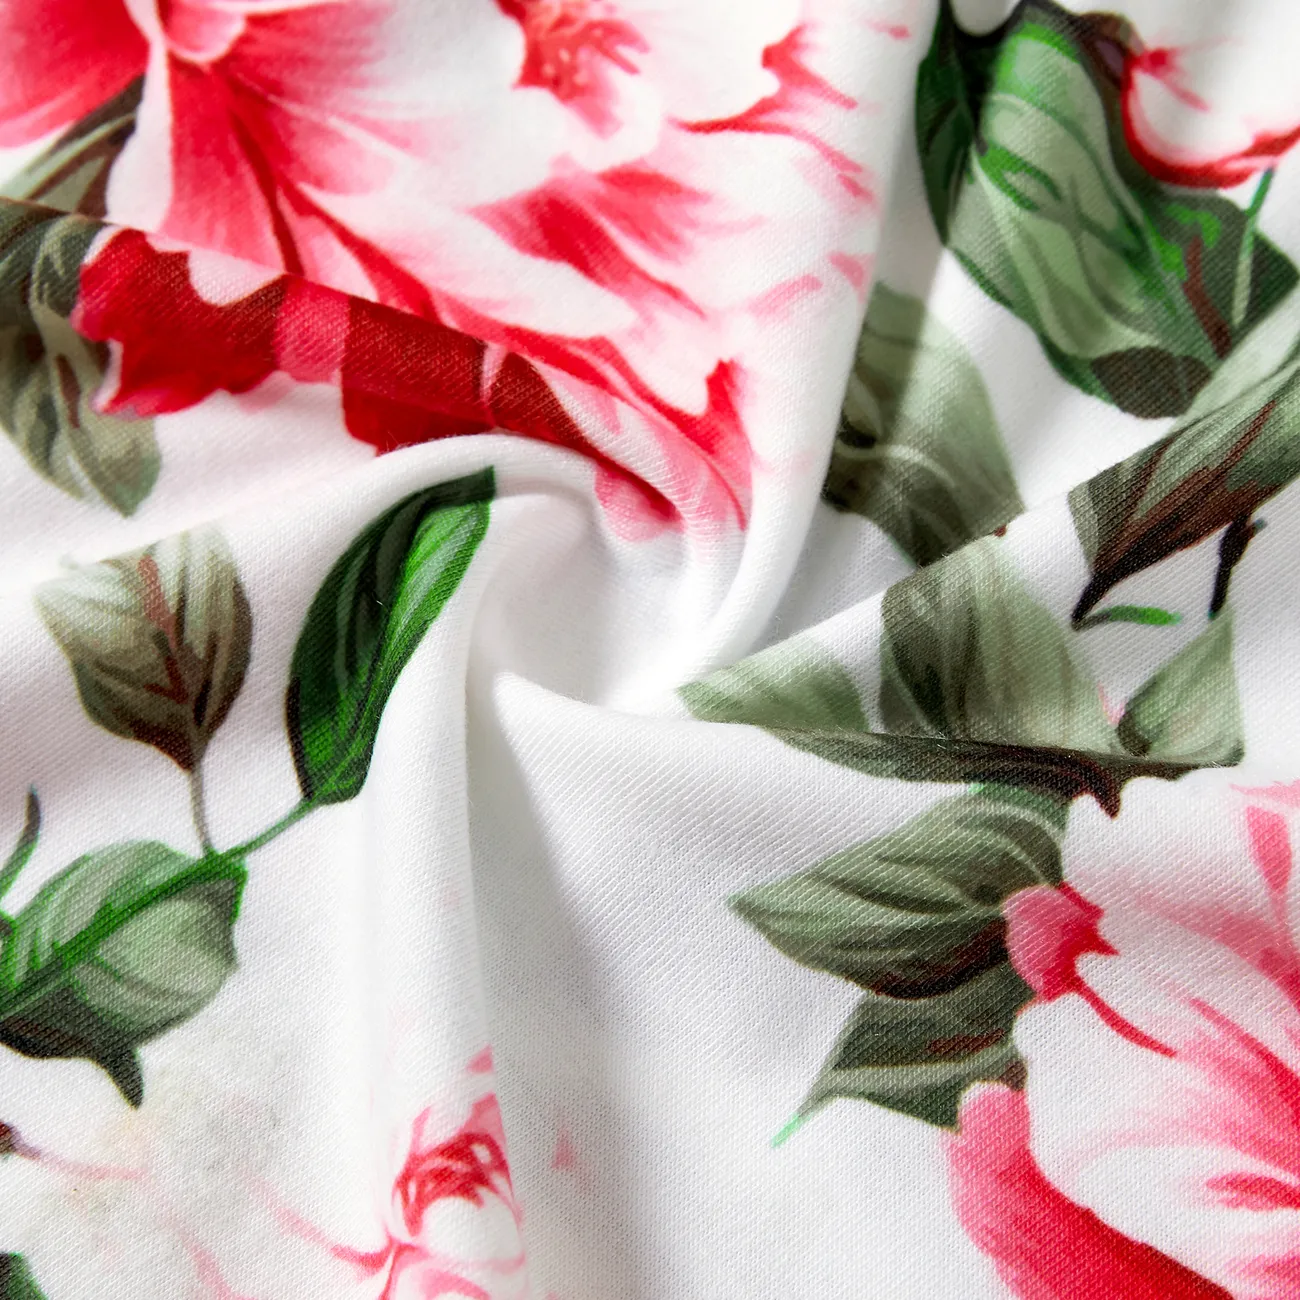 Matching Family Raglan-Sleeve T-shirt and Flutter Shoulder Floral Dress Sets LightArmyGreen big image 1